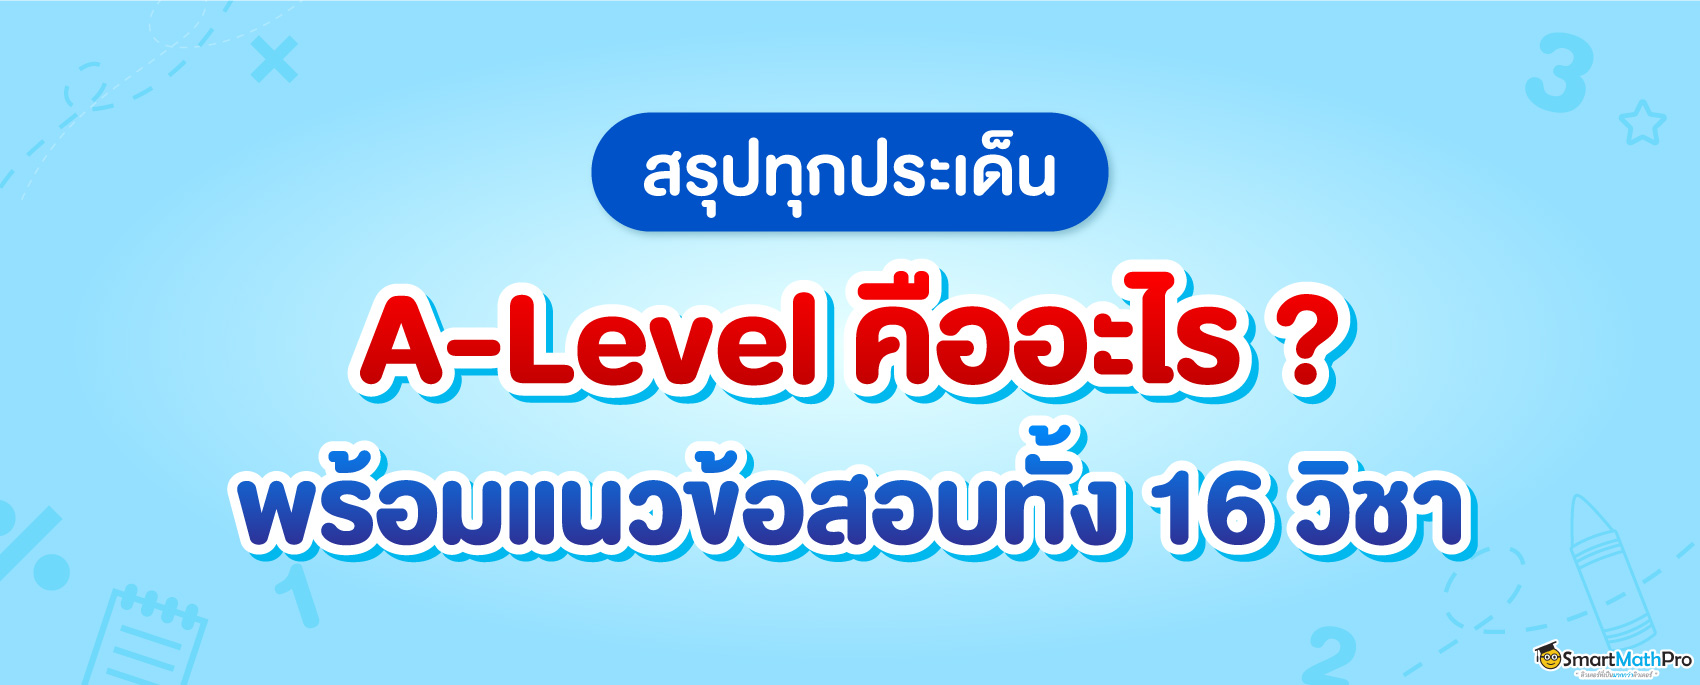 A Level คืออะไร? มีวิชาอะไรบ้าง? สรุปครบทุกประเด็นของ A-Level 67